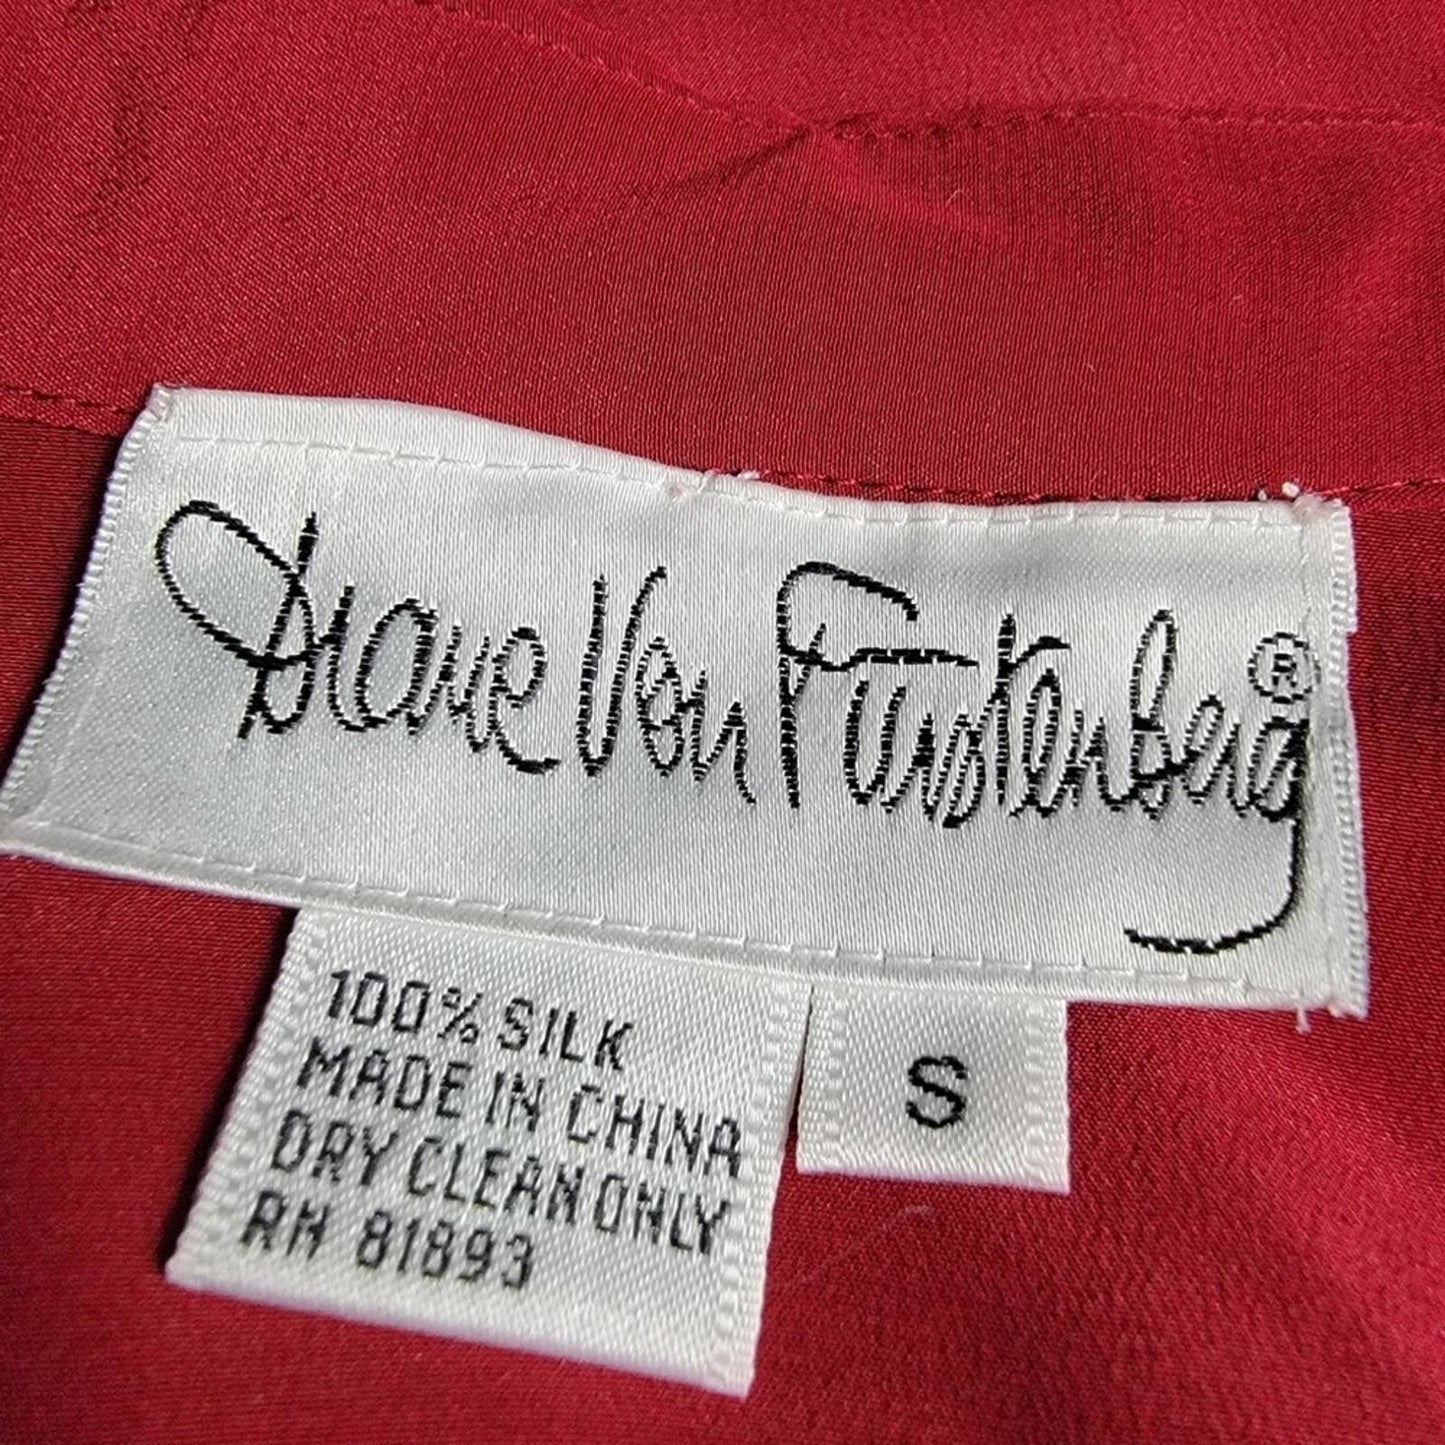 Vintage 90s Diane Von Furstenburg Silk Blouse Button Up Top - S